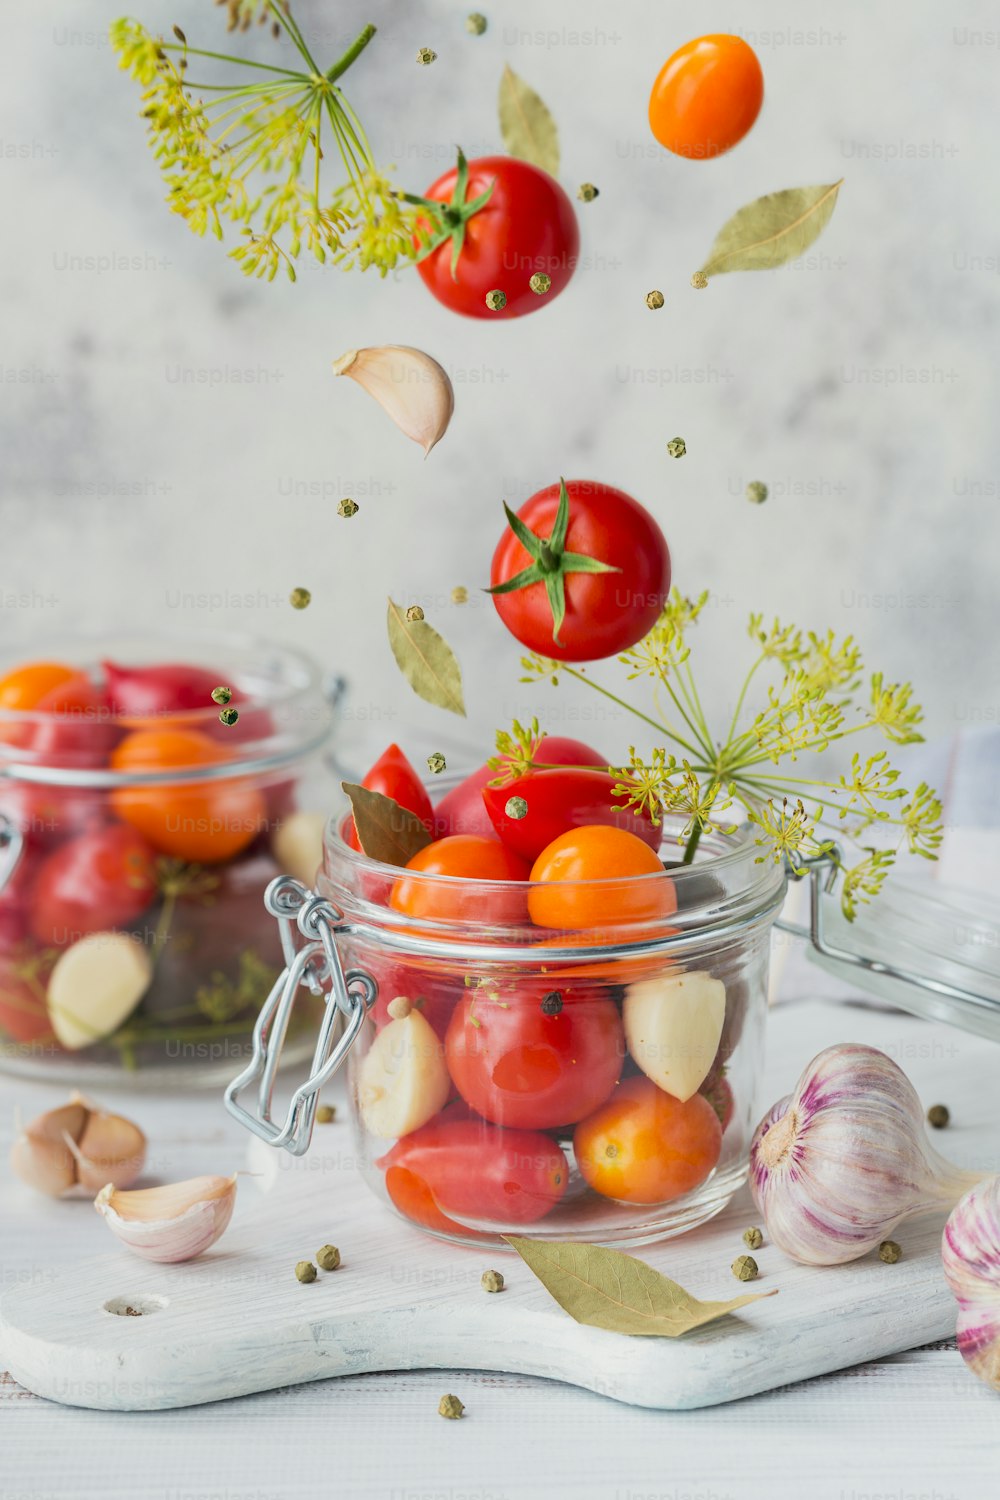 Fliegende Zutaten für gesundes veganes Essen. Eingelegtes Gemüse. Tomaten werden zum Konservieren vorbereitet. Clean Eating, vegetarisches Food-Konzept